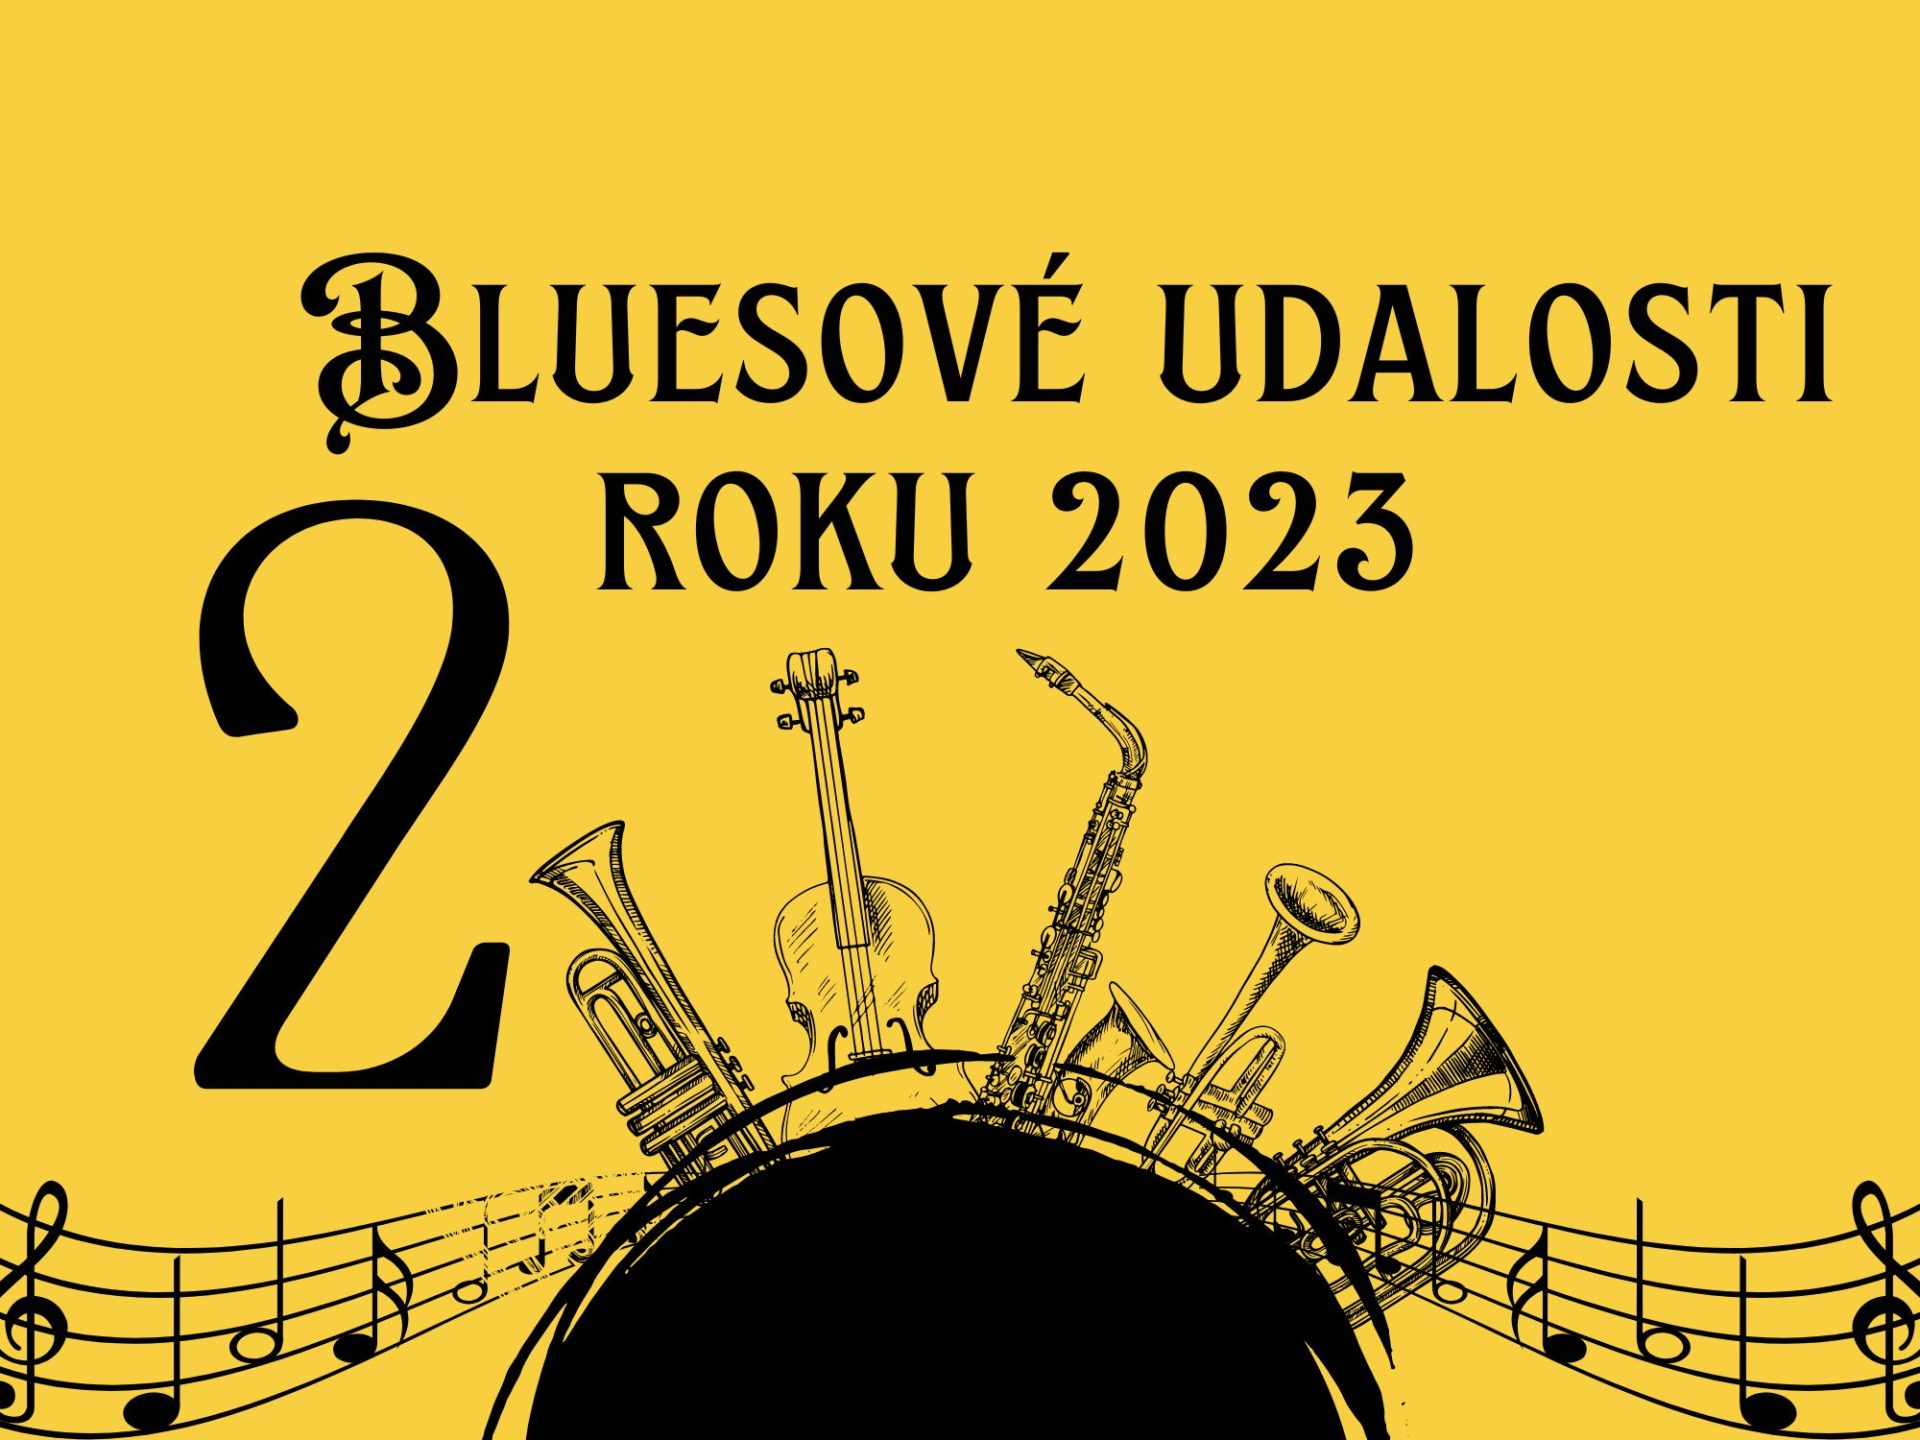 Bluesové udalosti roku 2023 2. časť